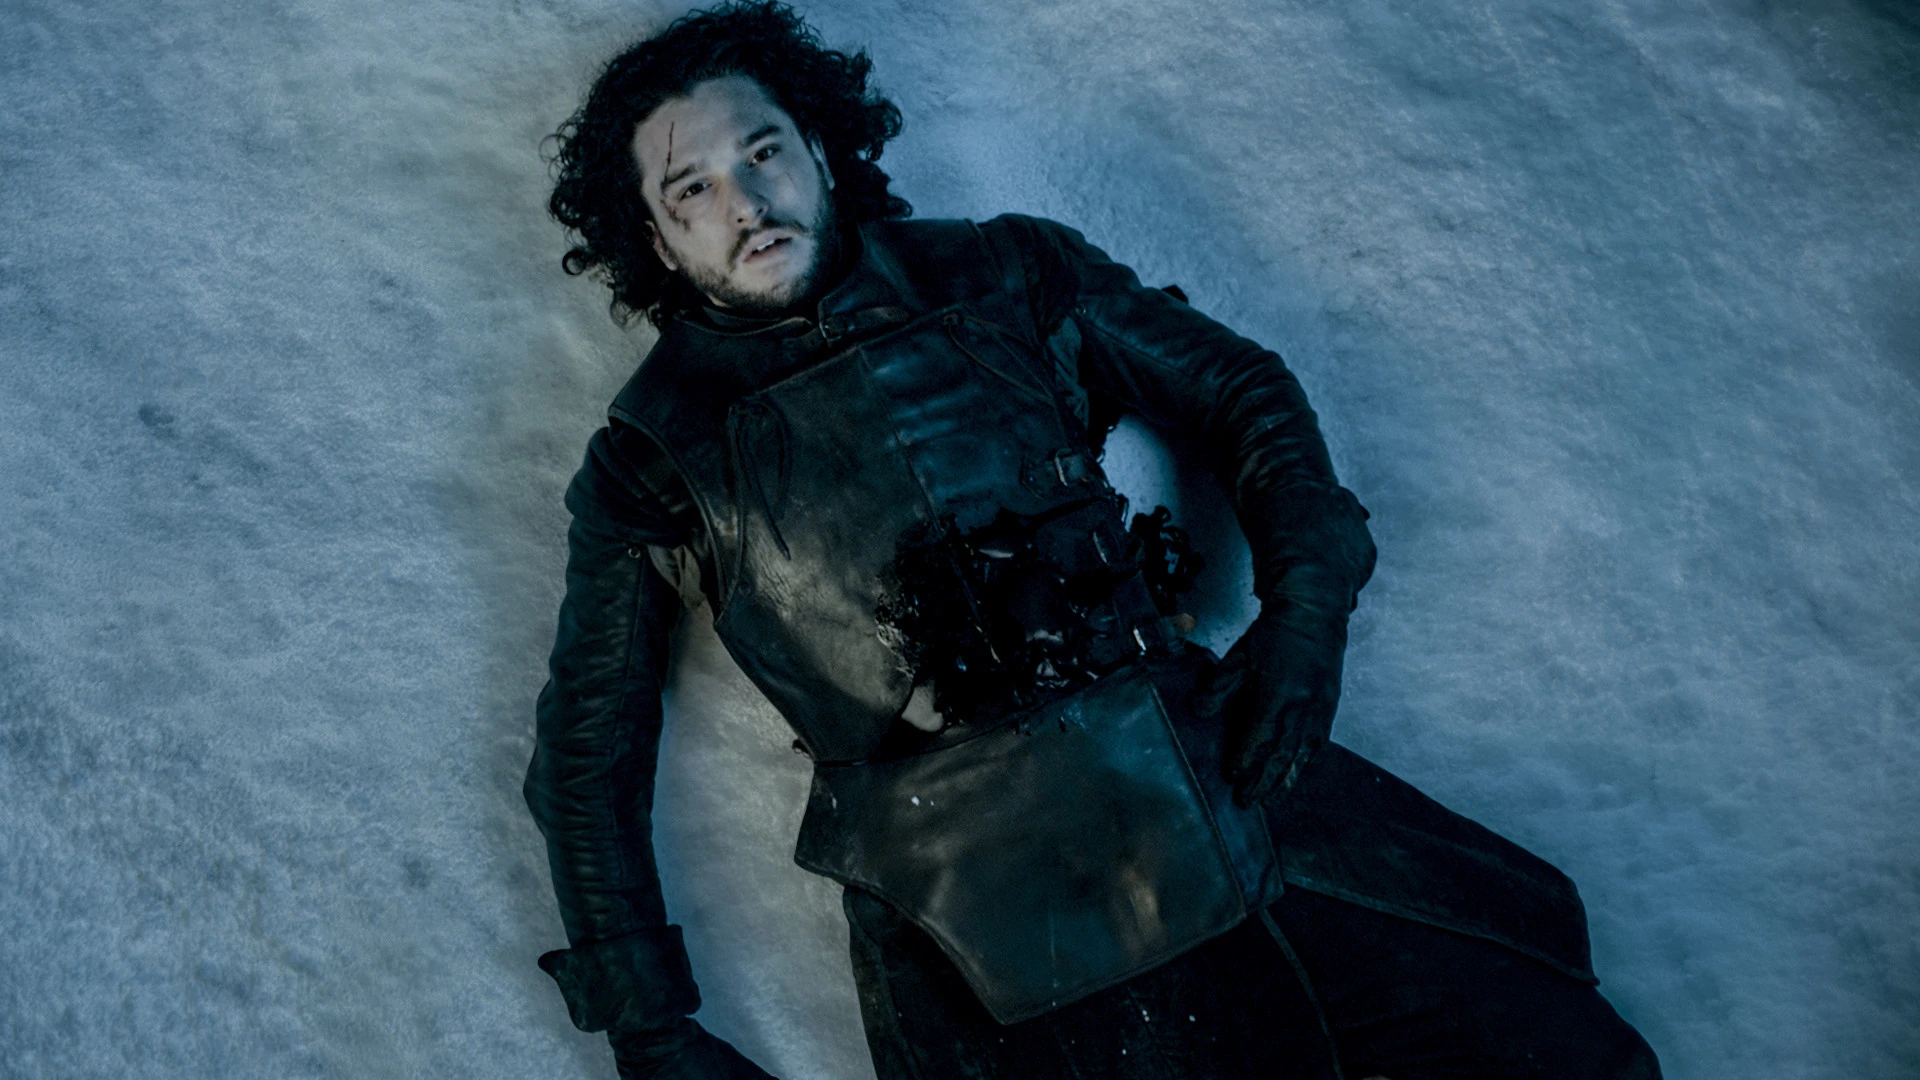 Jon Snow stabbed to death (Season 5)